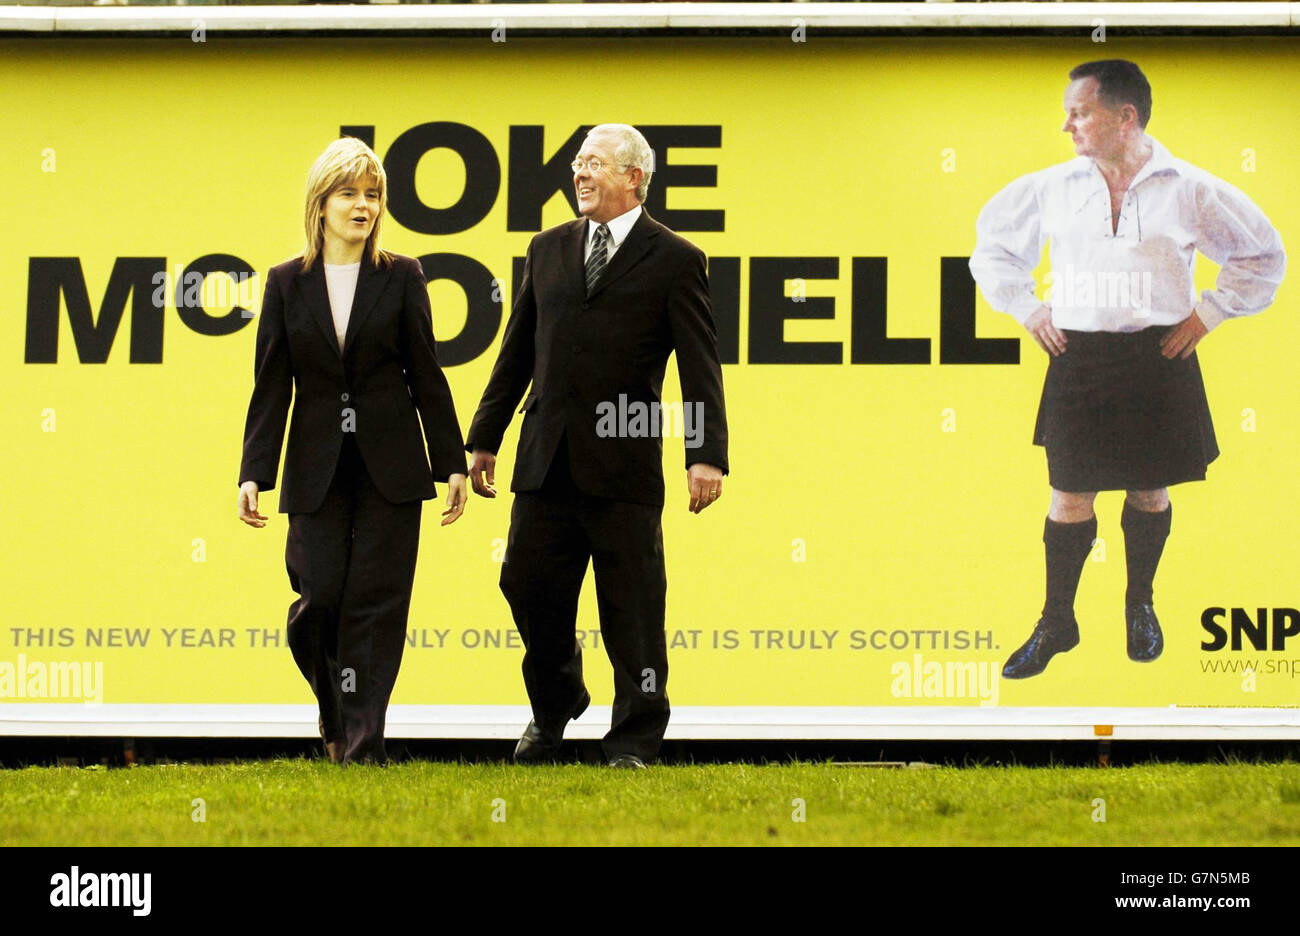 Nicola Sturgeon, Vorsitzende der Scottish National Party (SNP), und Bruce Crawford, der Business-Moderator der SNP (rechts). Das Plakat macht sich über Schottlands ersten Minister Jack McConnell lustig. Stockfoto